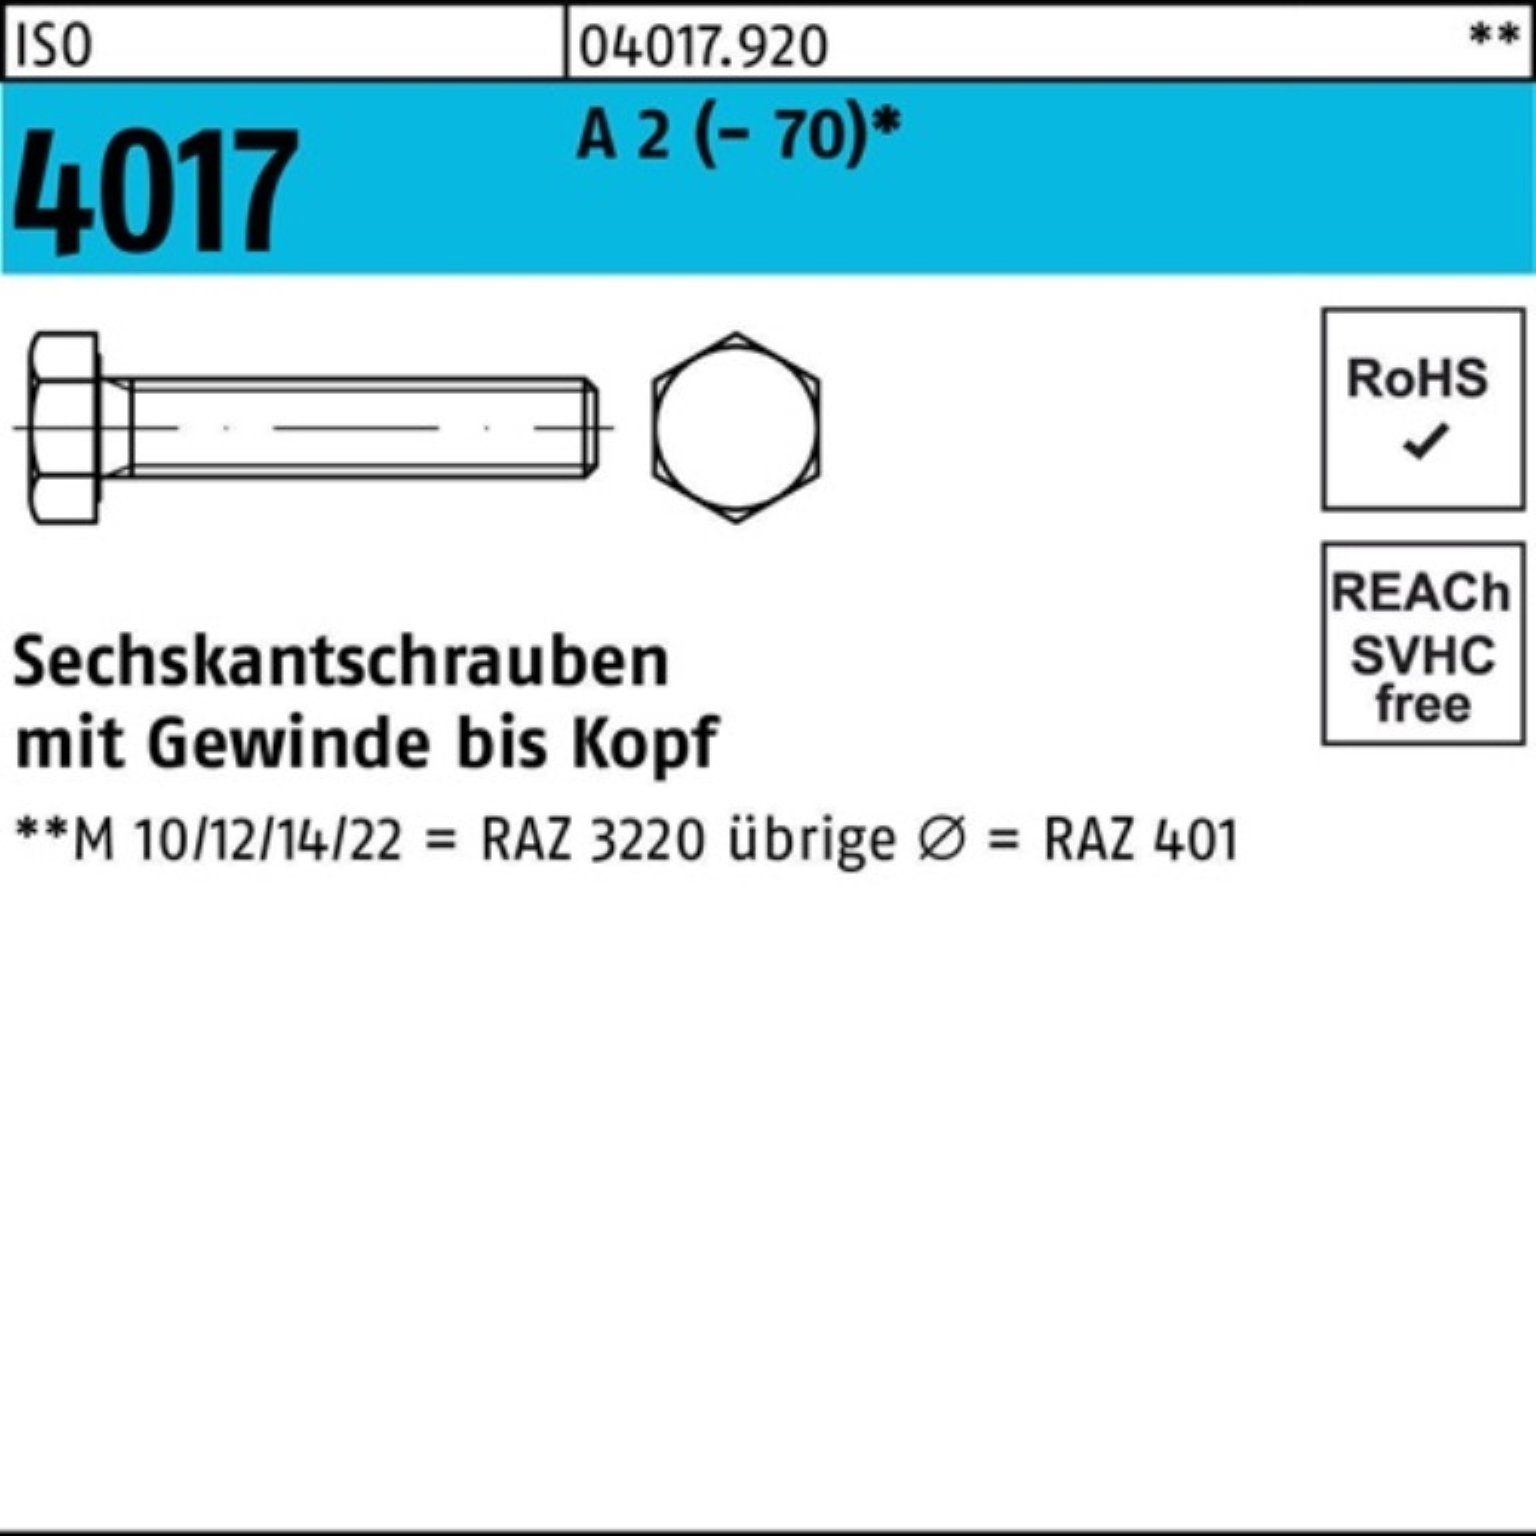 Bufab Sechskantschraube 100er Pack Sechskantschraube ISO 4017 VG M24x 60 A 2 (70) 10 Stück